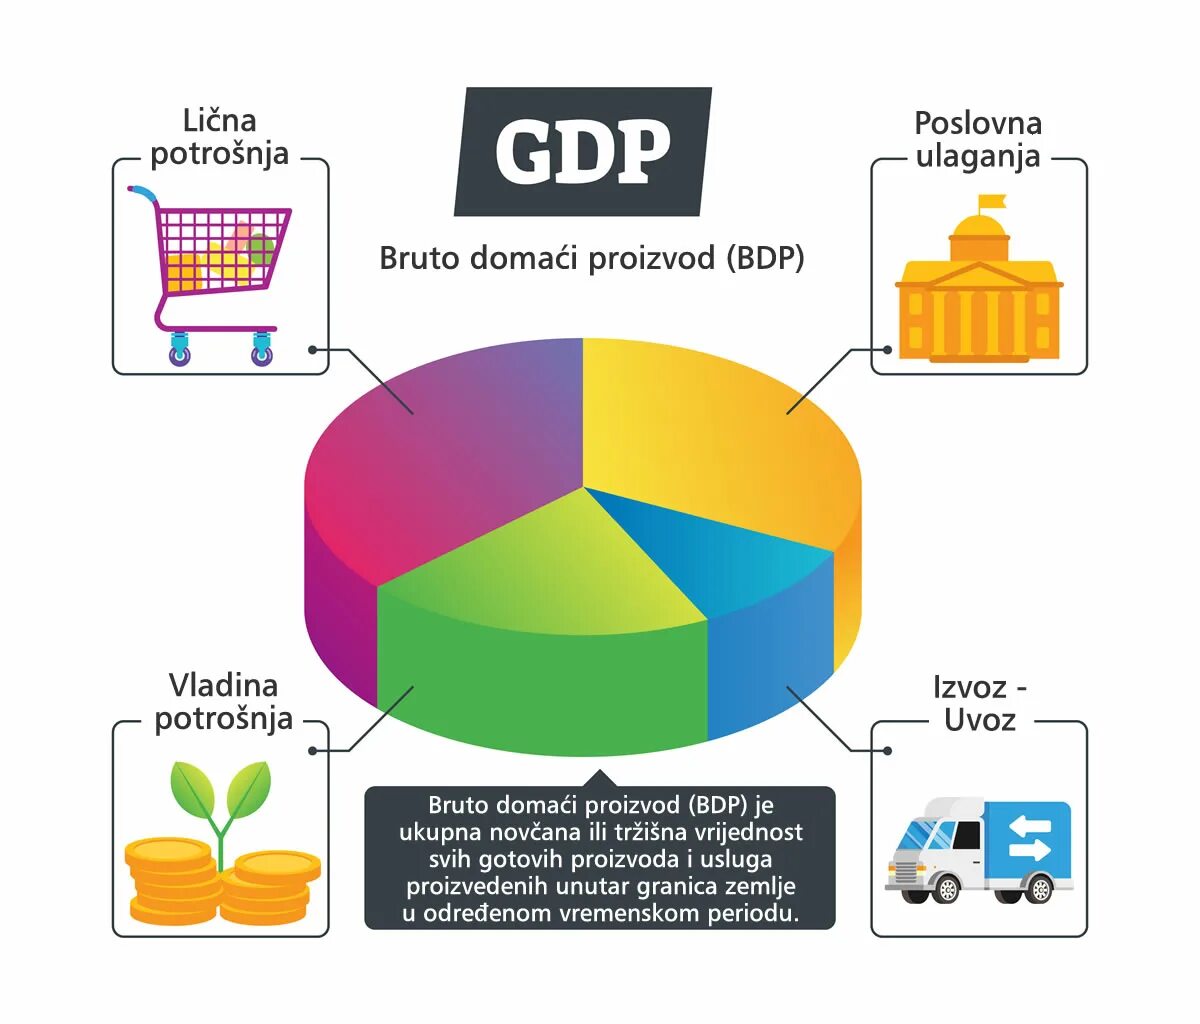 Gross domestic product. Gross domestic product (GDP). GDP стандарт. Gross domestic product gross domestic product. GDP картинки.